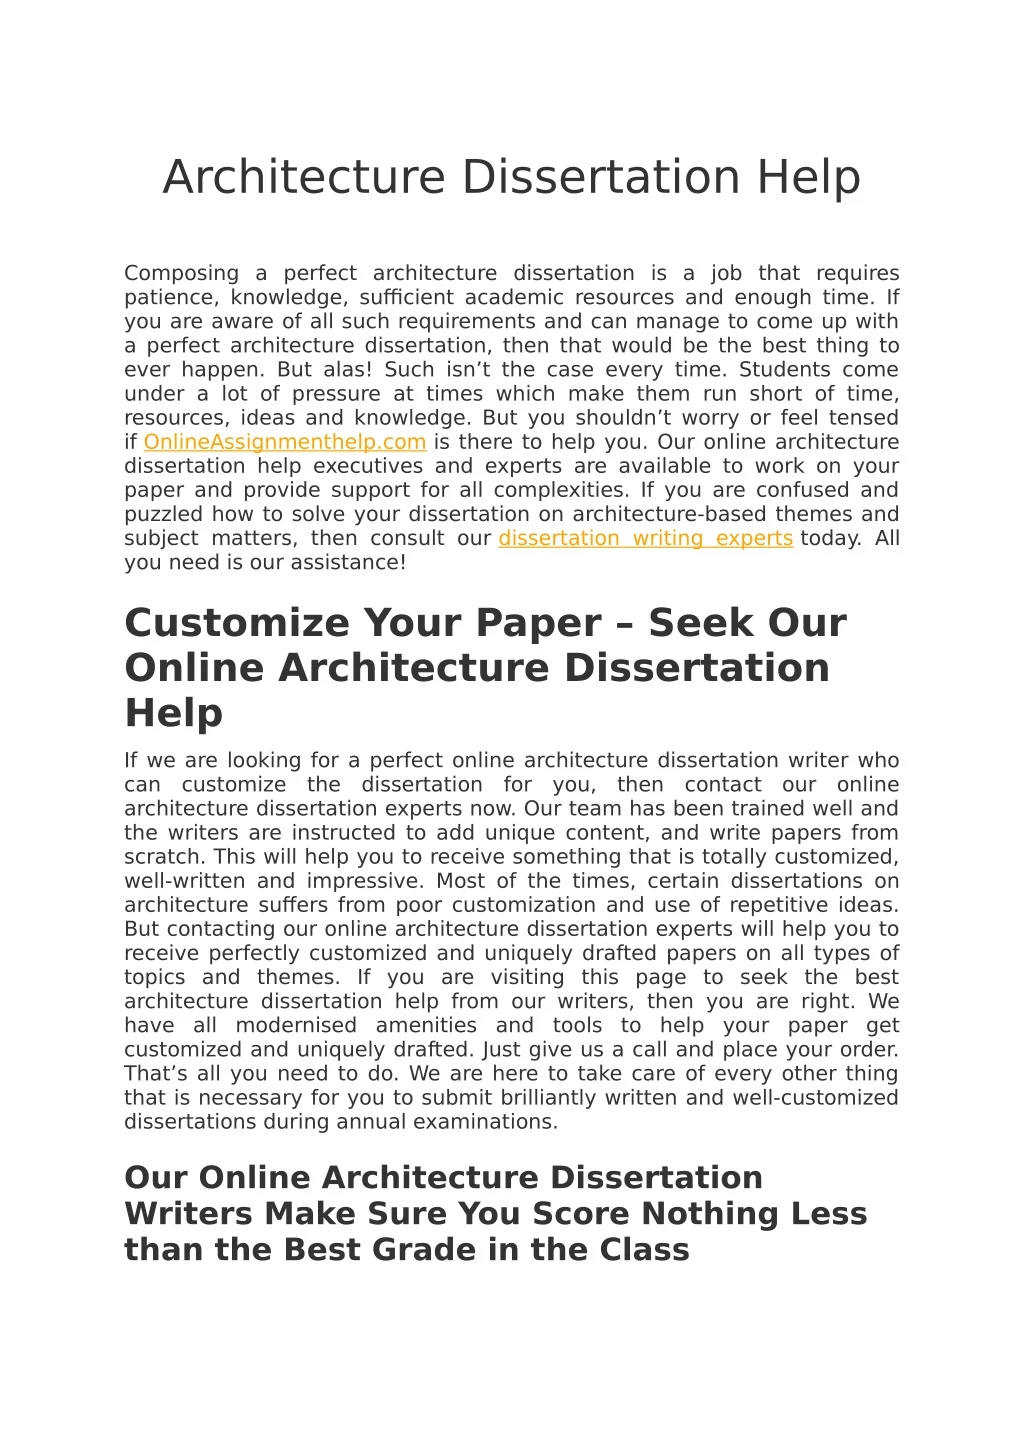 architecture dissertation help